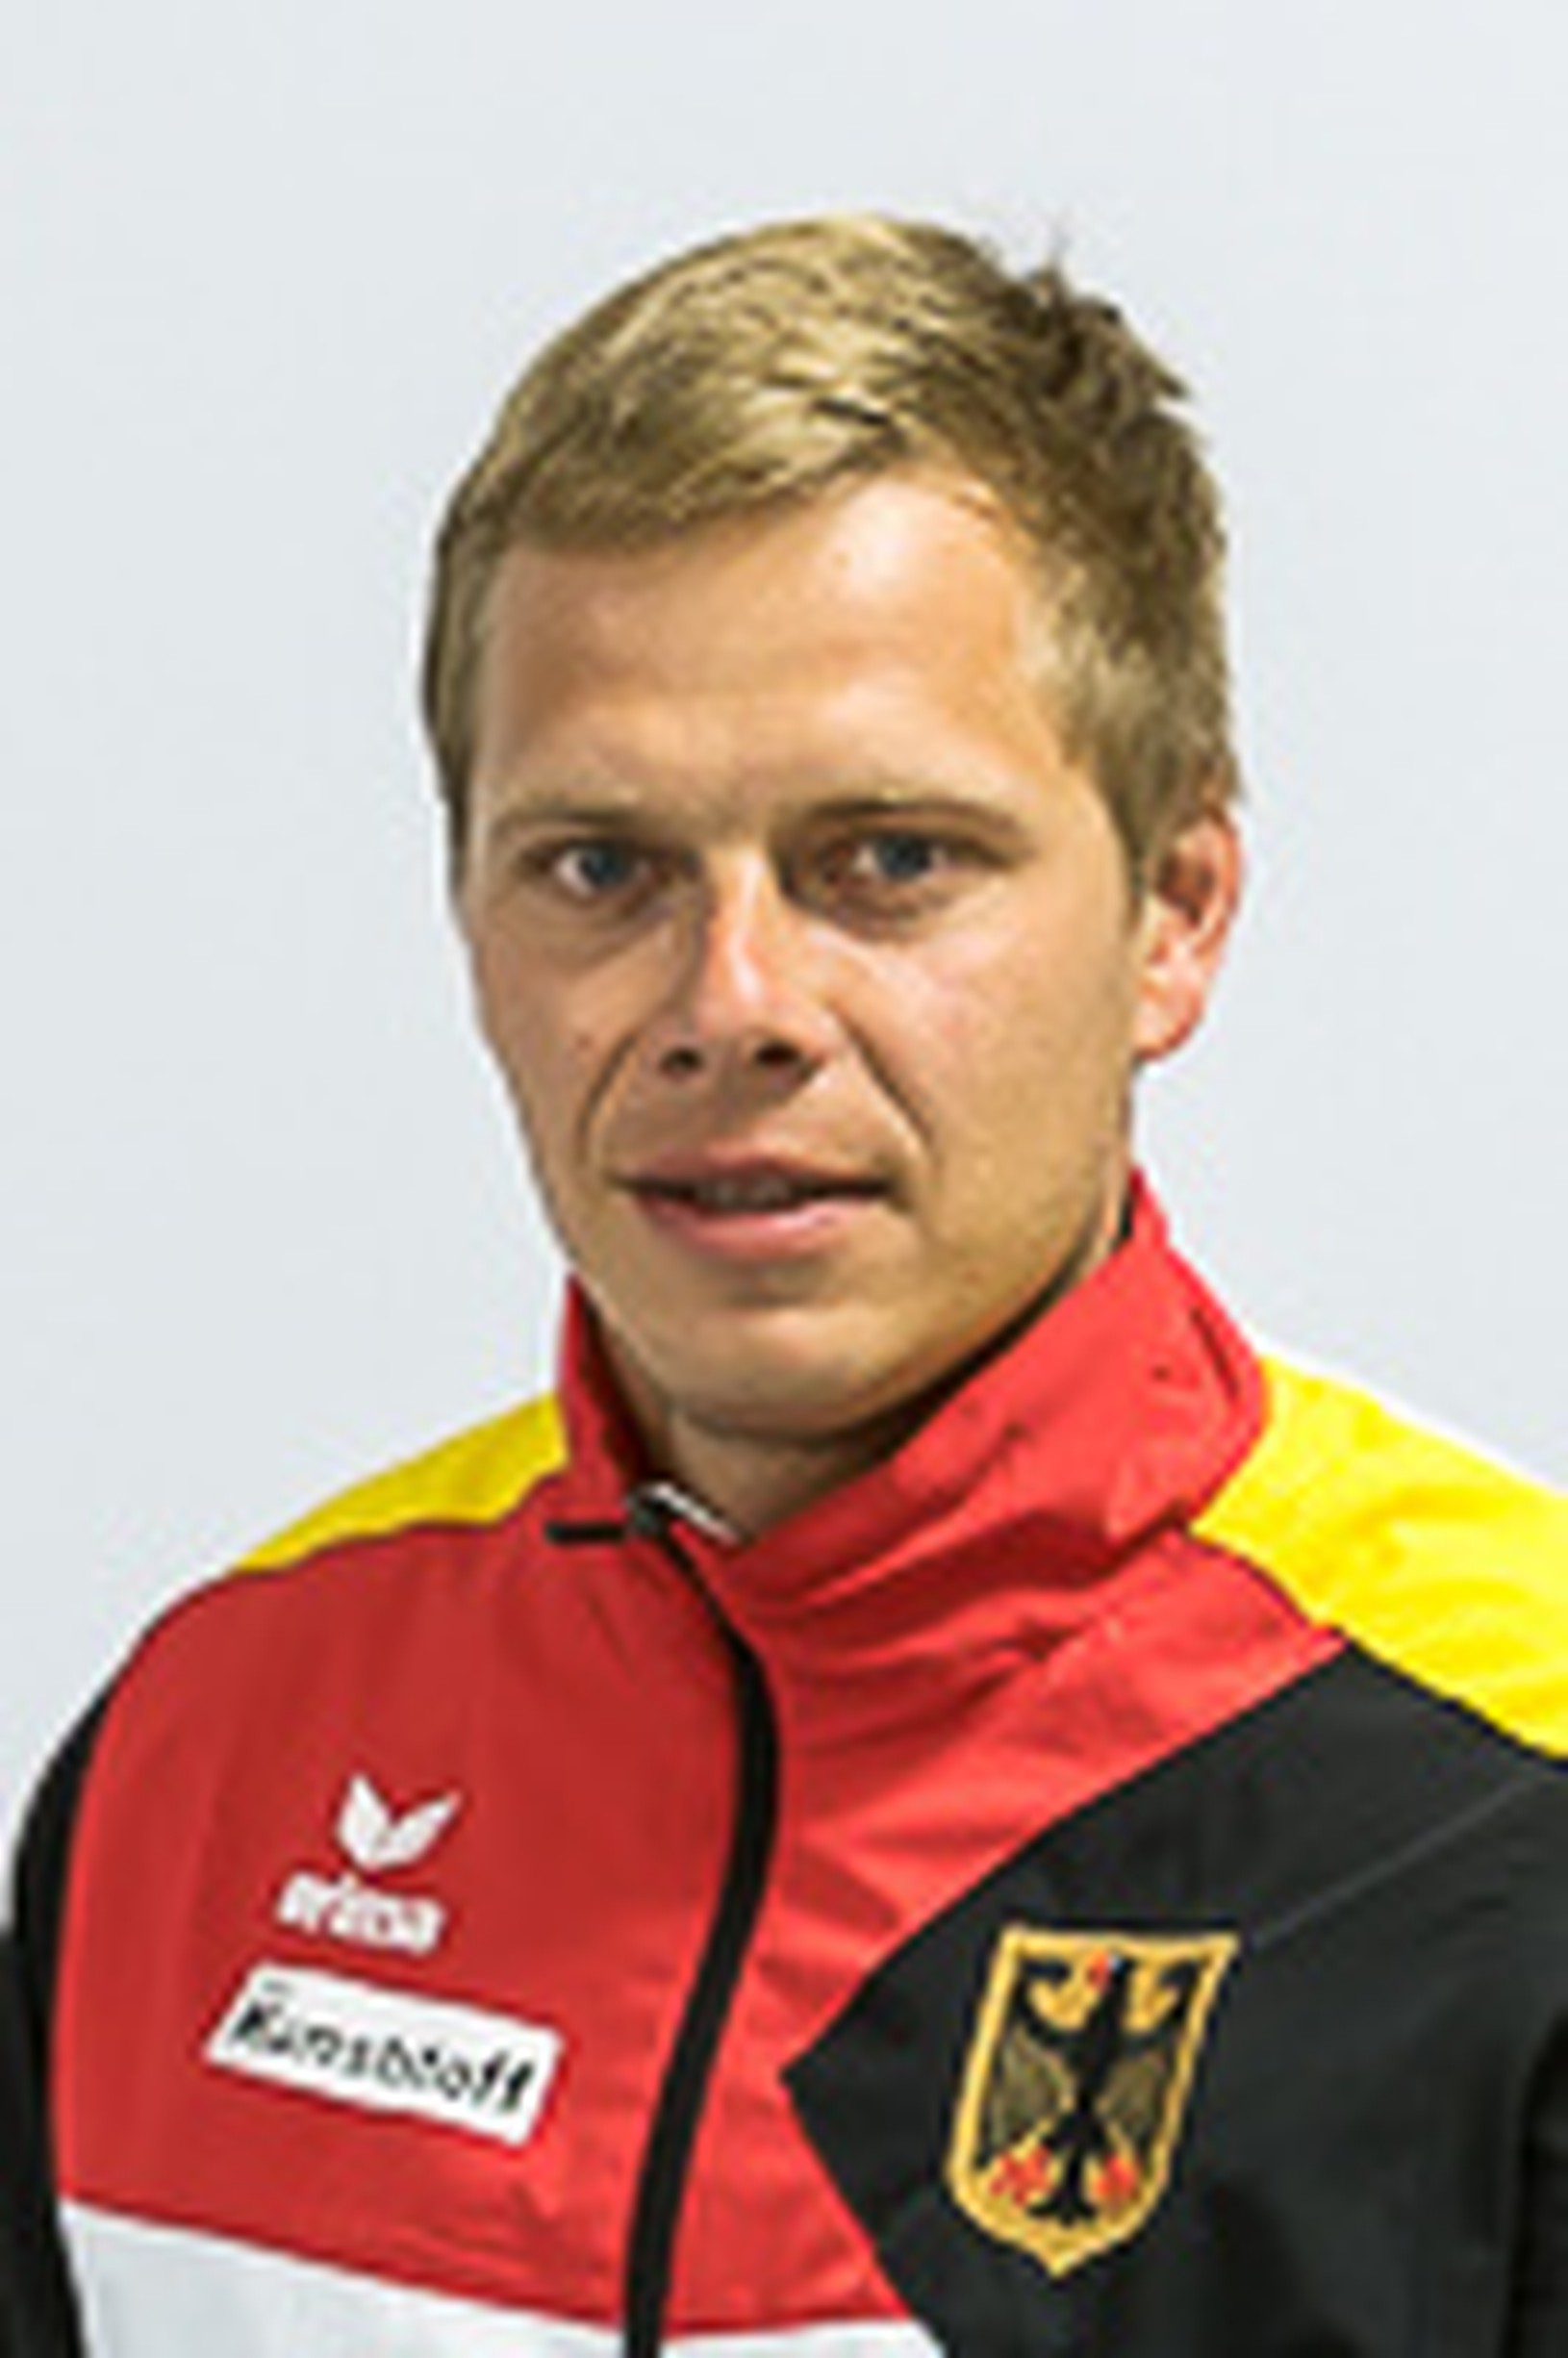 Stefan Henze
